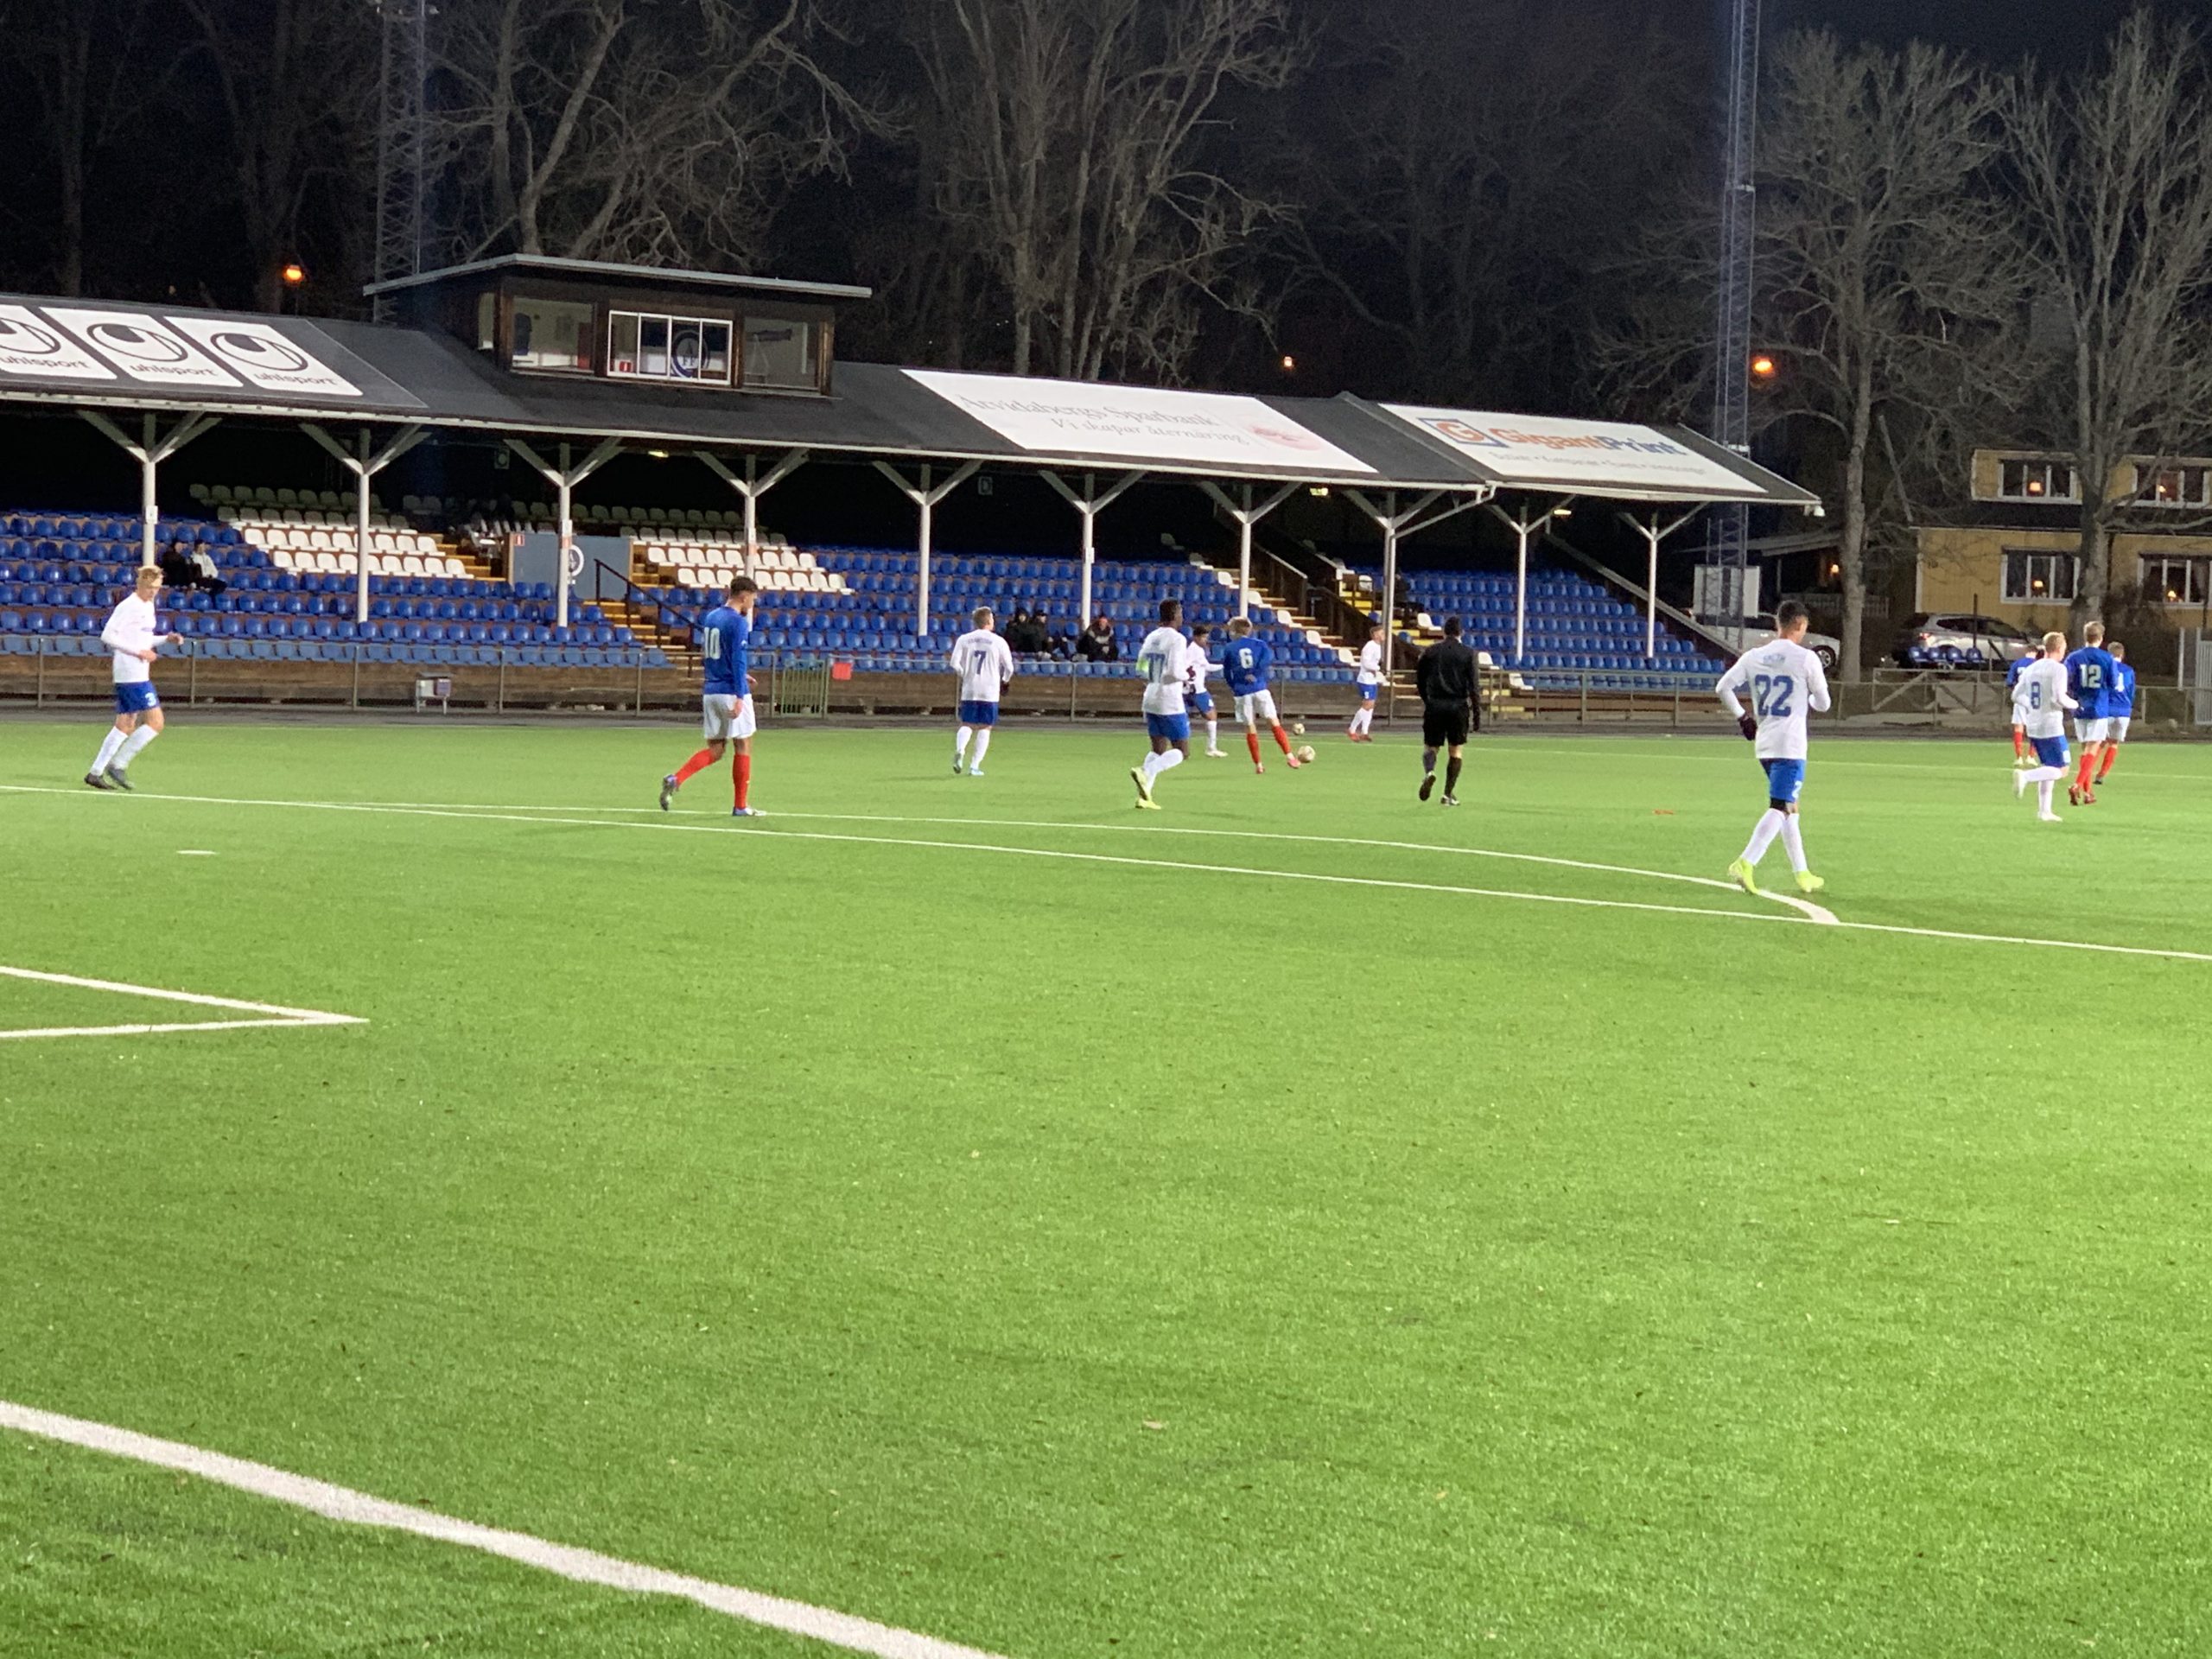 Förlust mot IFK Norrköping, trots stundtals bra spel